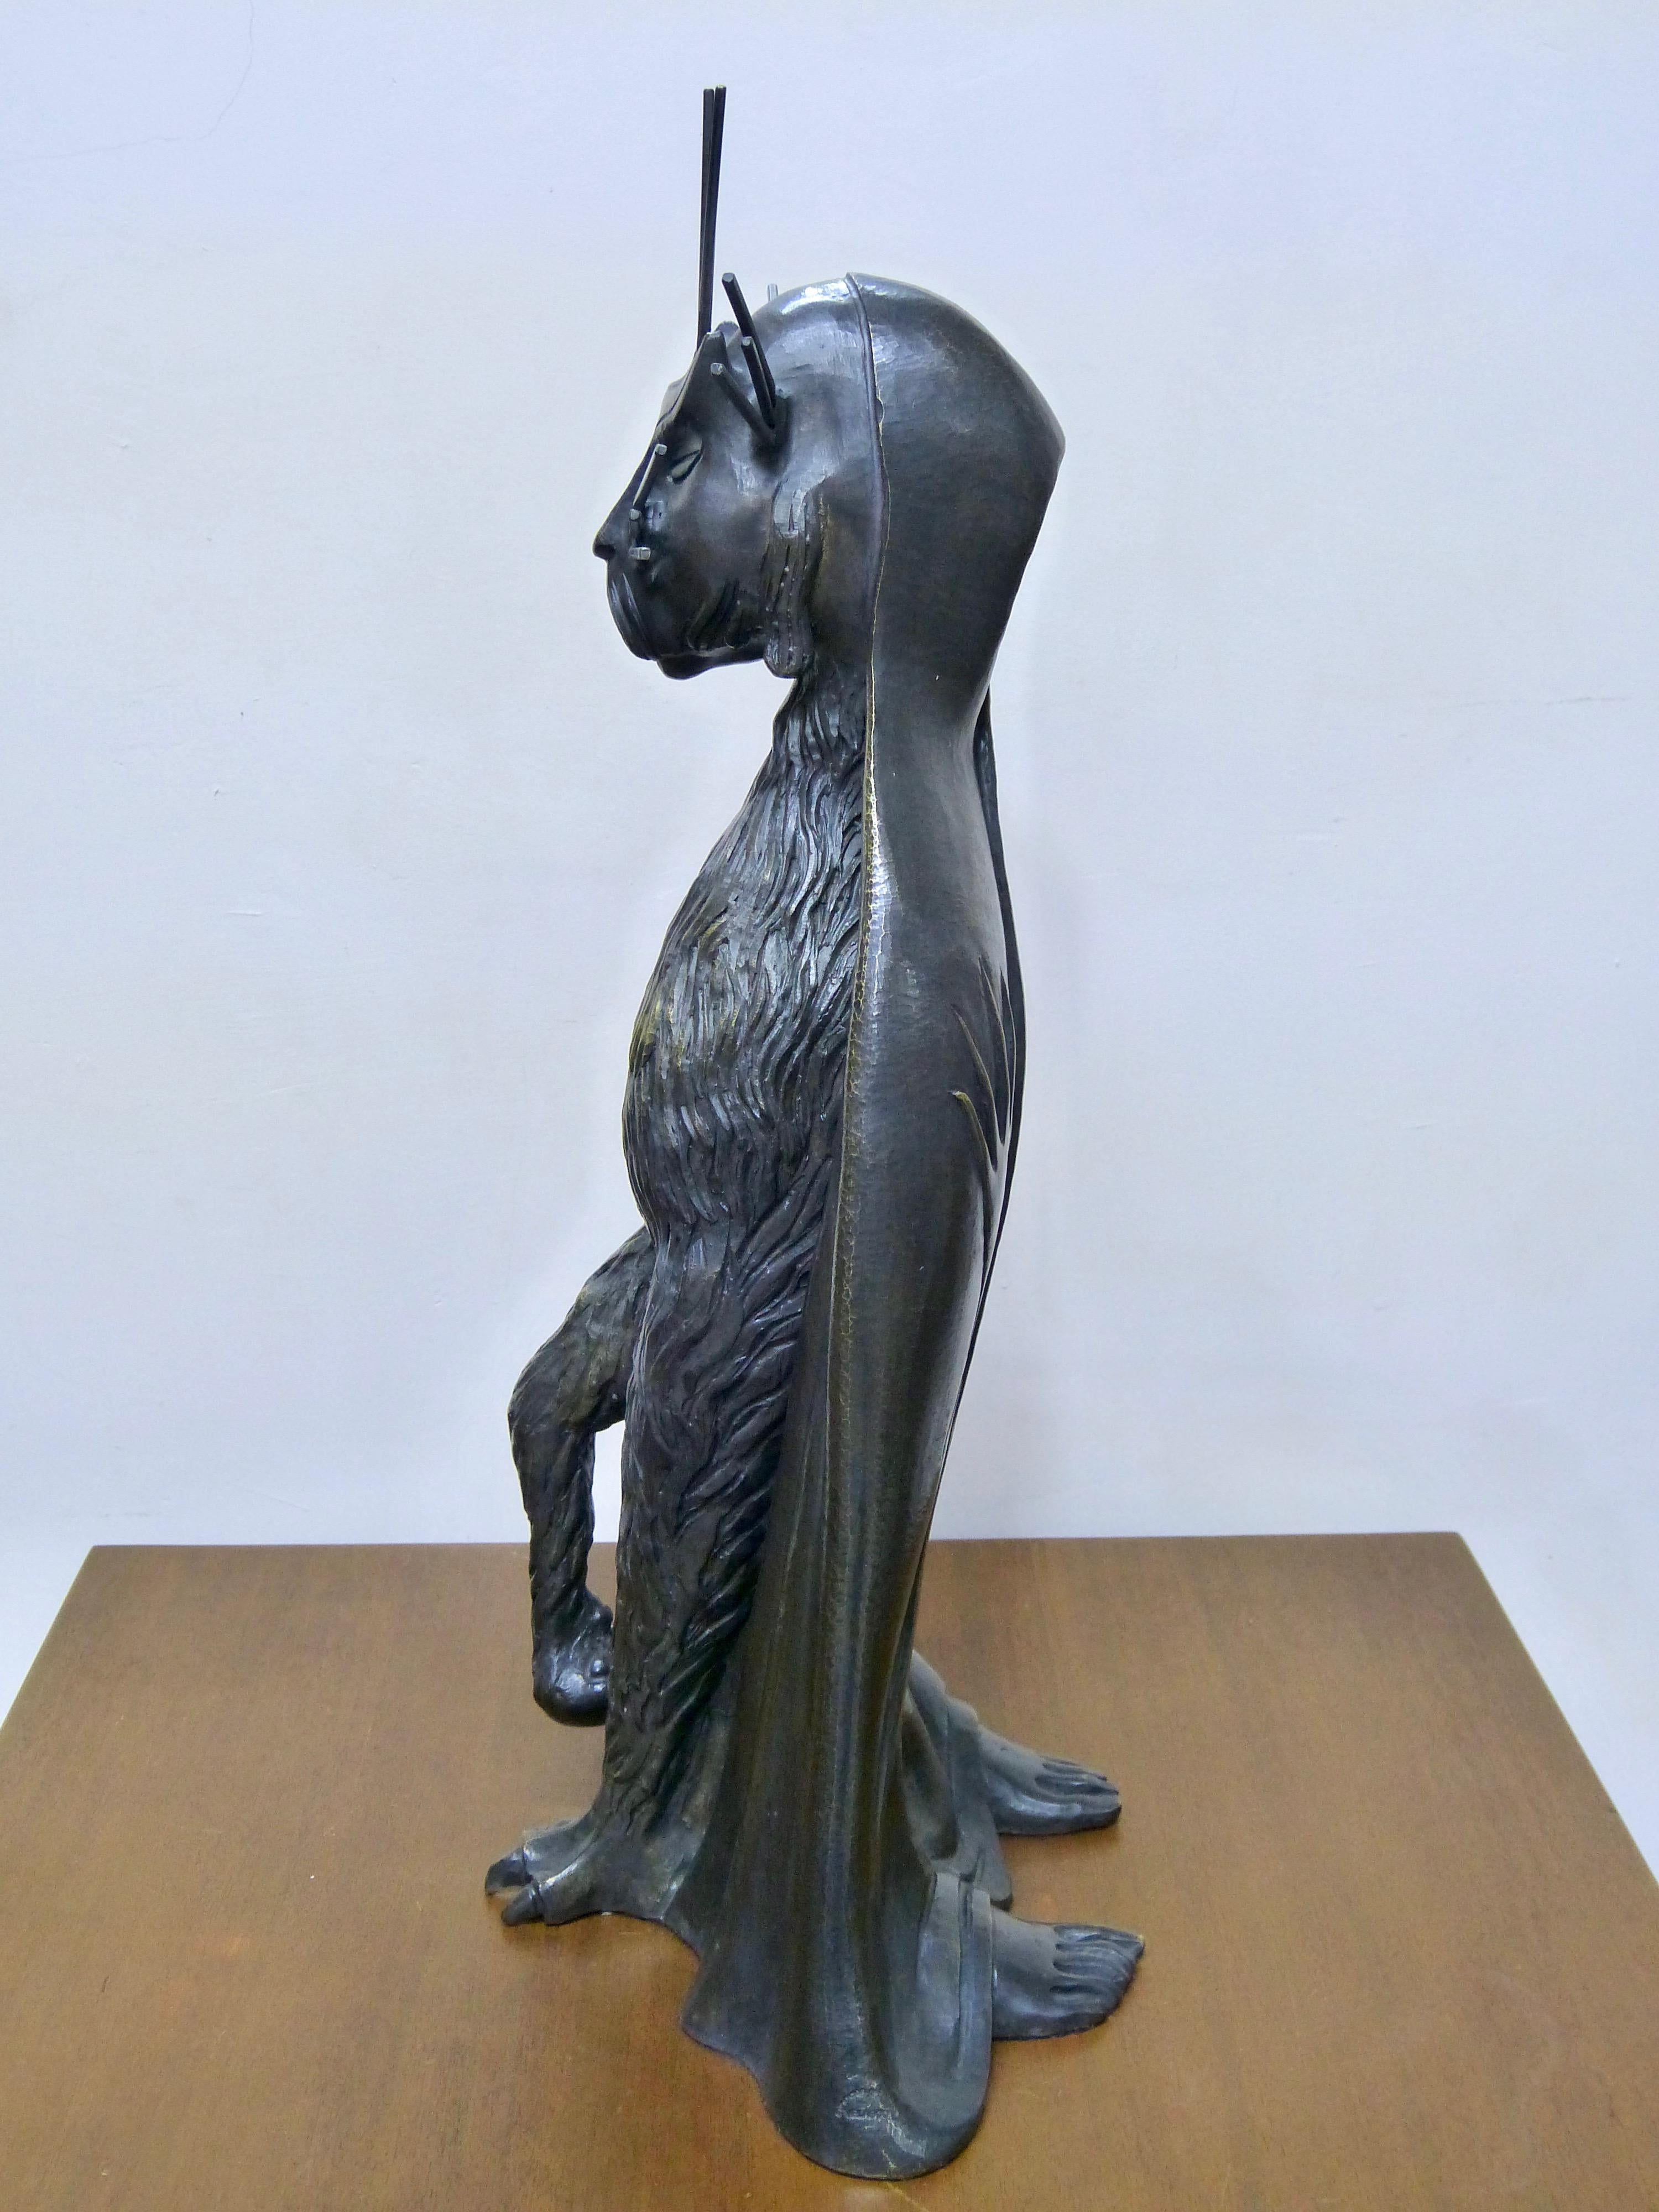 Mexican Gato De La Noche 'Night Cat' Surrealism Bronze Sculpture By Leonora Carrington For Sale